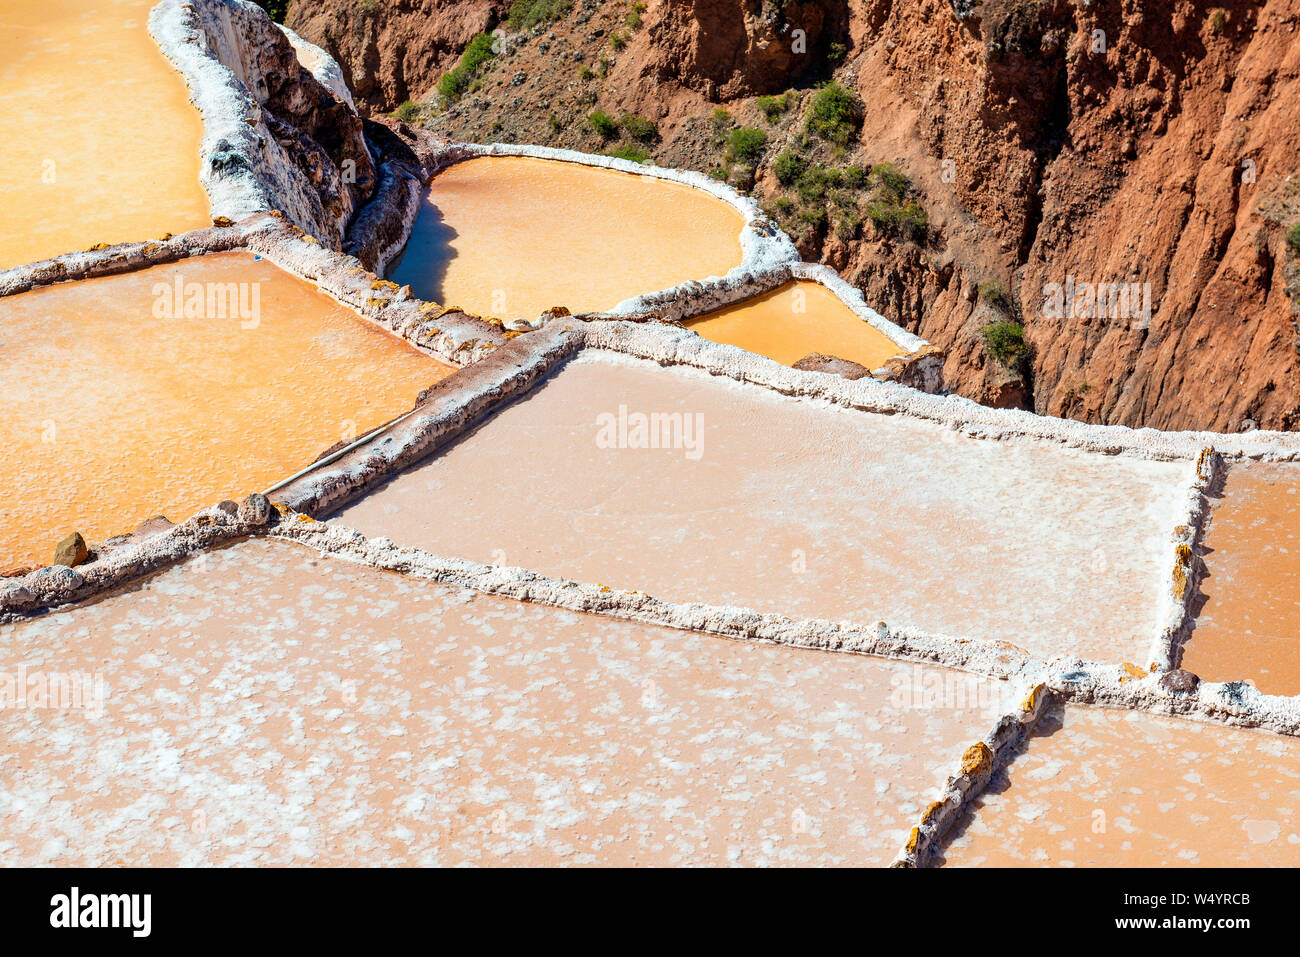 Gros plan sur les terrasses de sel de Maras avec la meilleure qualité de sel dans le pays, province de Cusco, Pérou. Banque D'Images